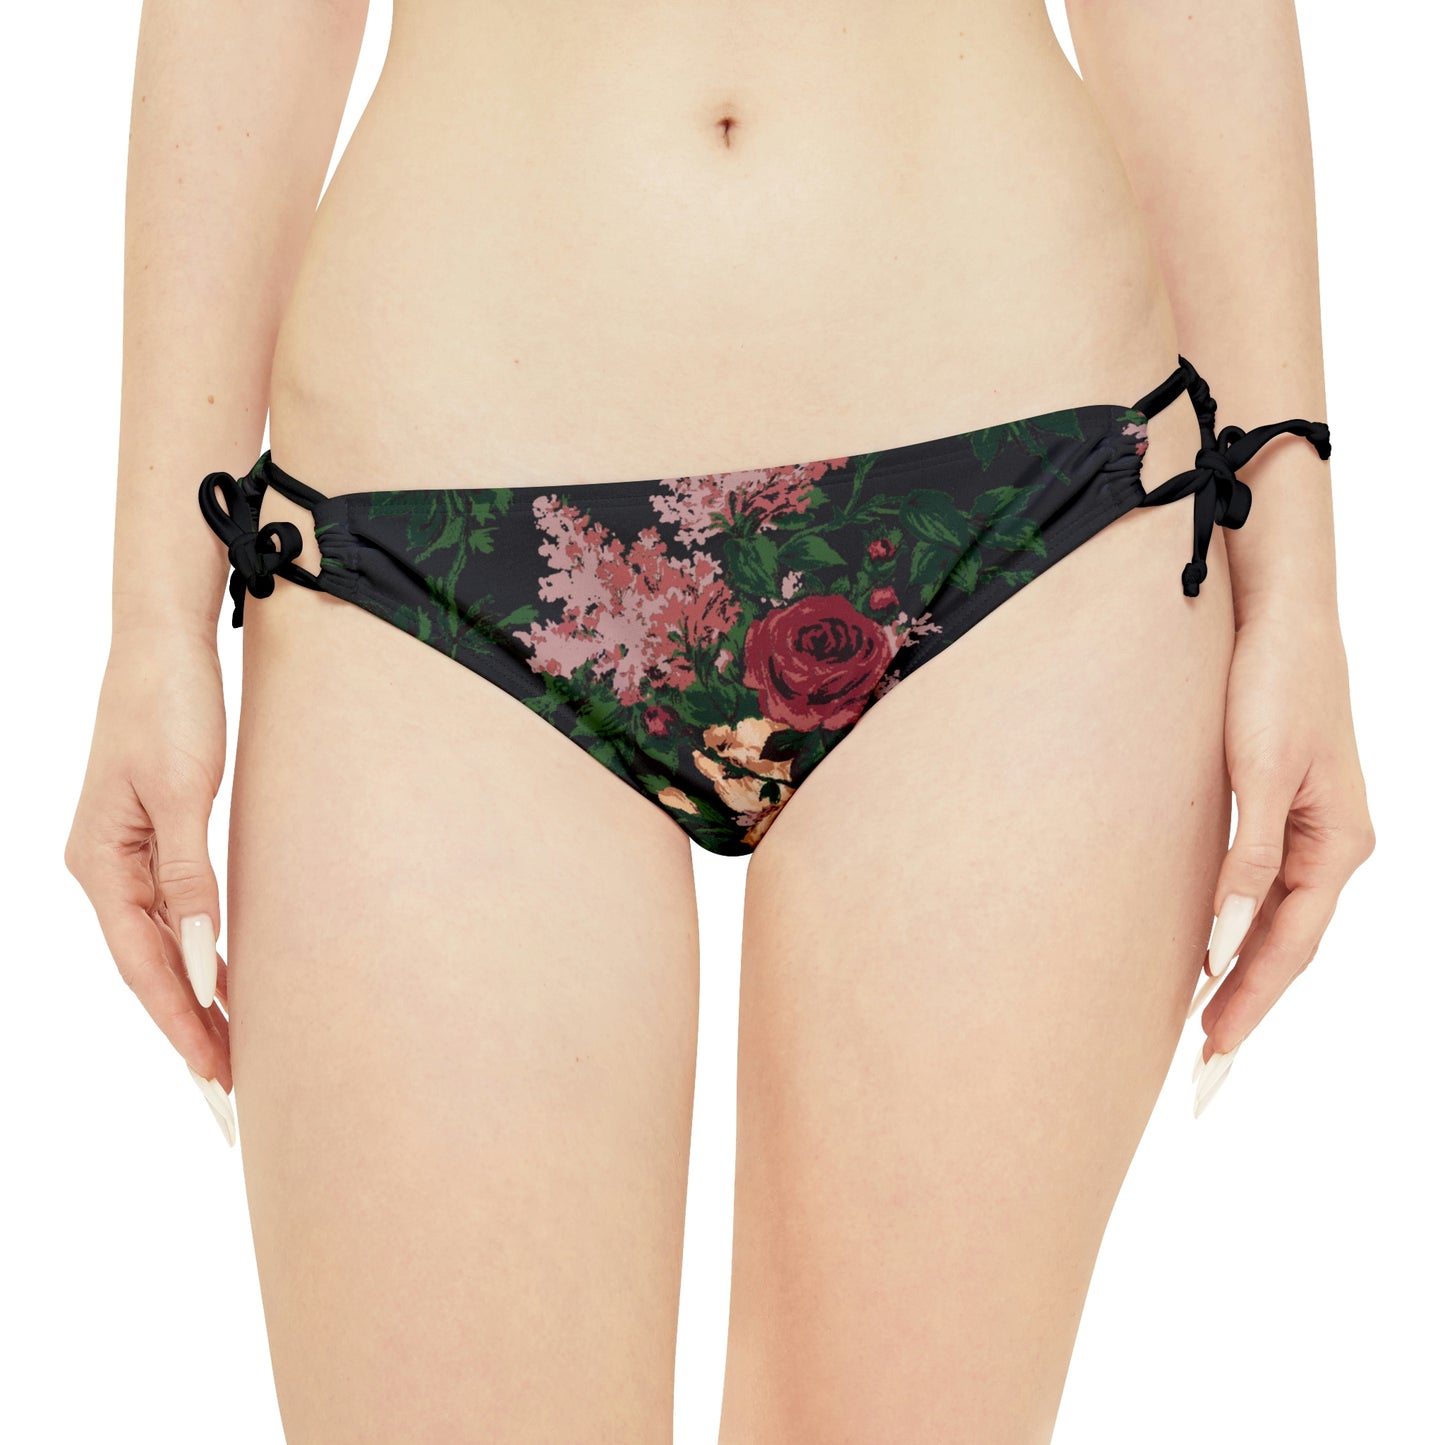 Antoinette Dark Bella Roses Strappy Bikini Set  | Pinup Couture Swim